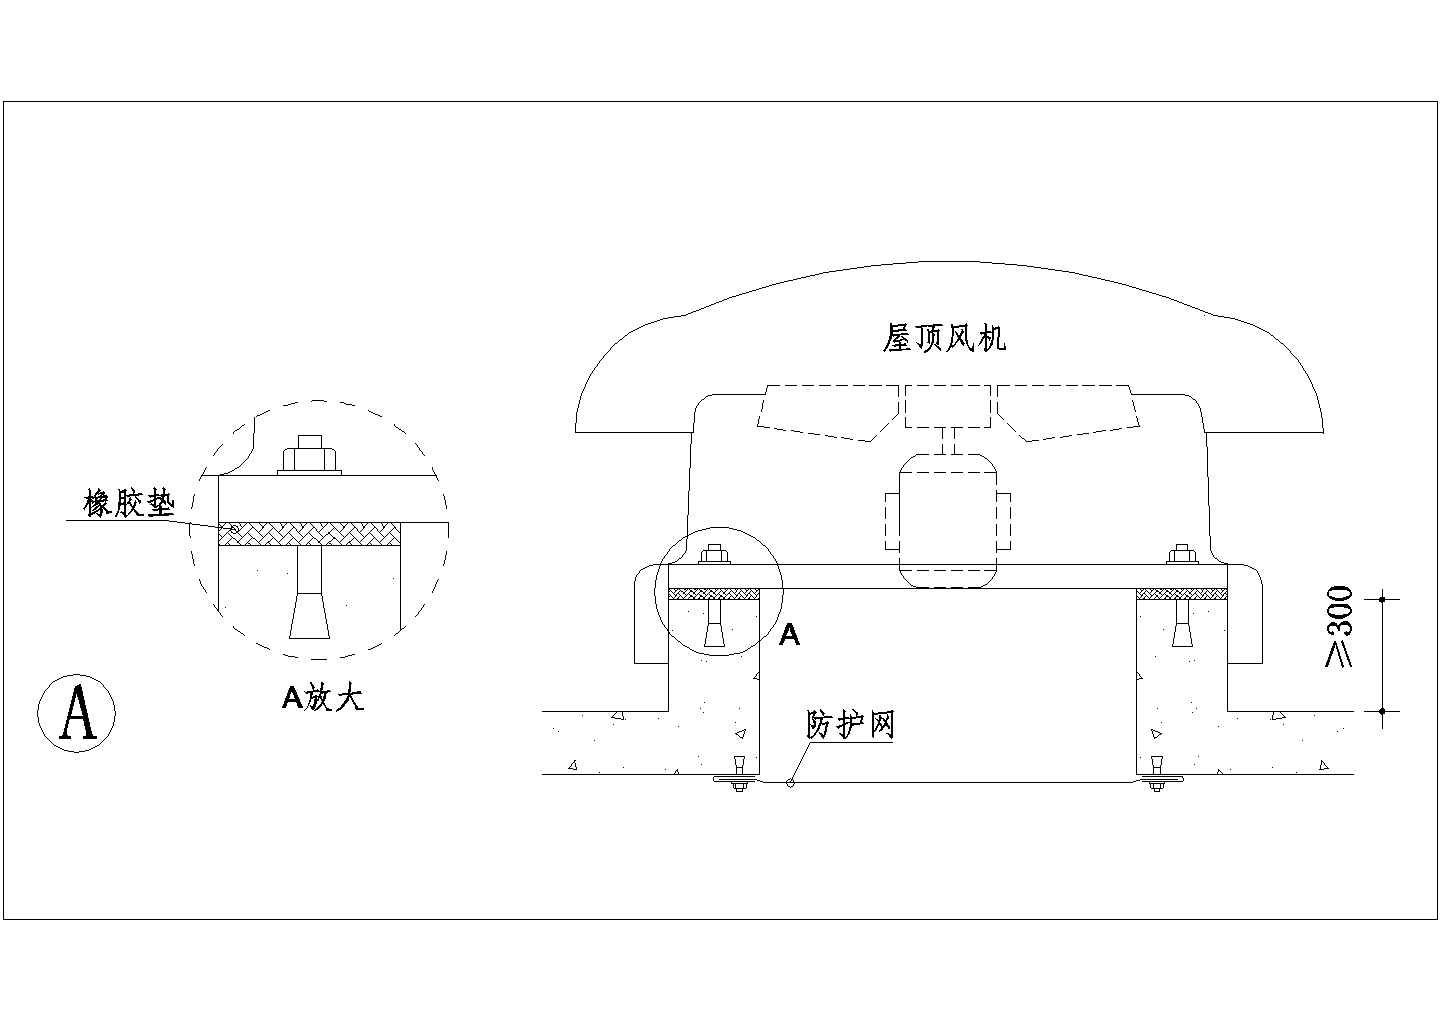 典型暖通工程屋顶蘑菇风机设计cad安装示意图